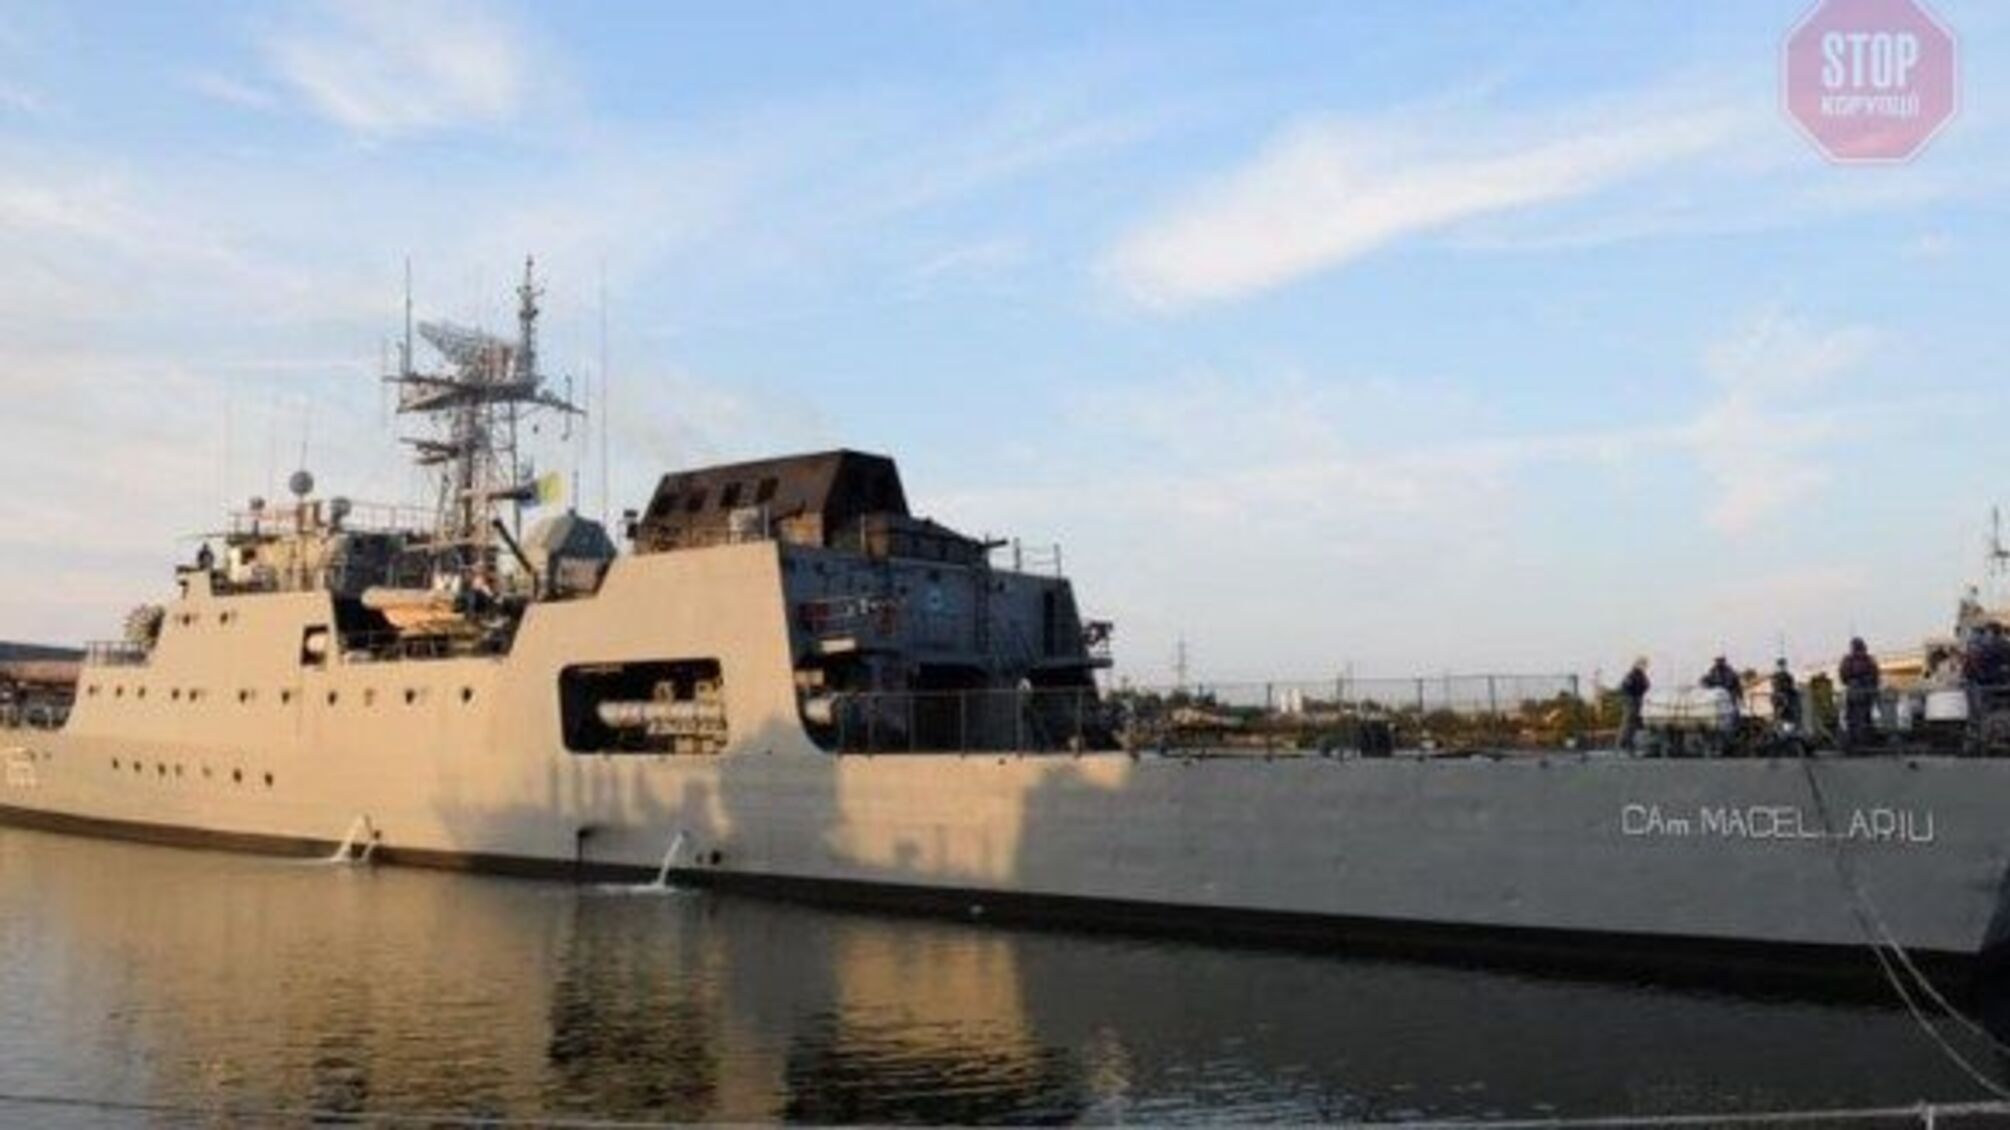 Для участі в морському параді до Одеси прямує корабель ВМС країни НАТО